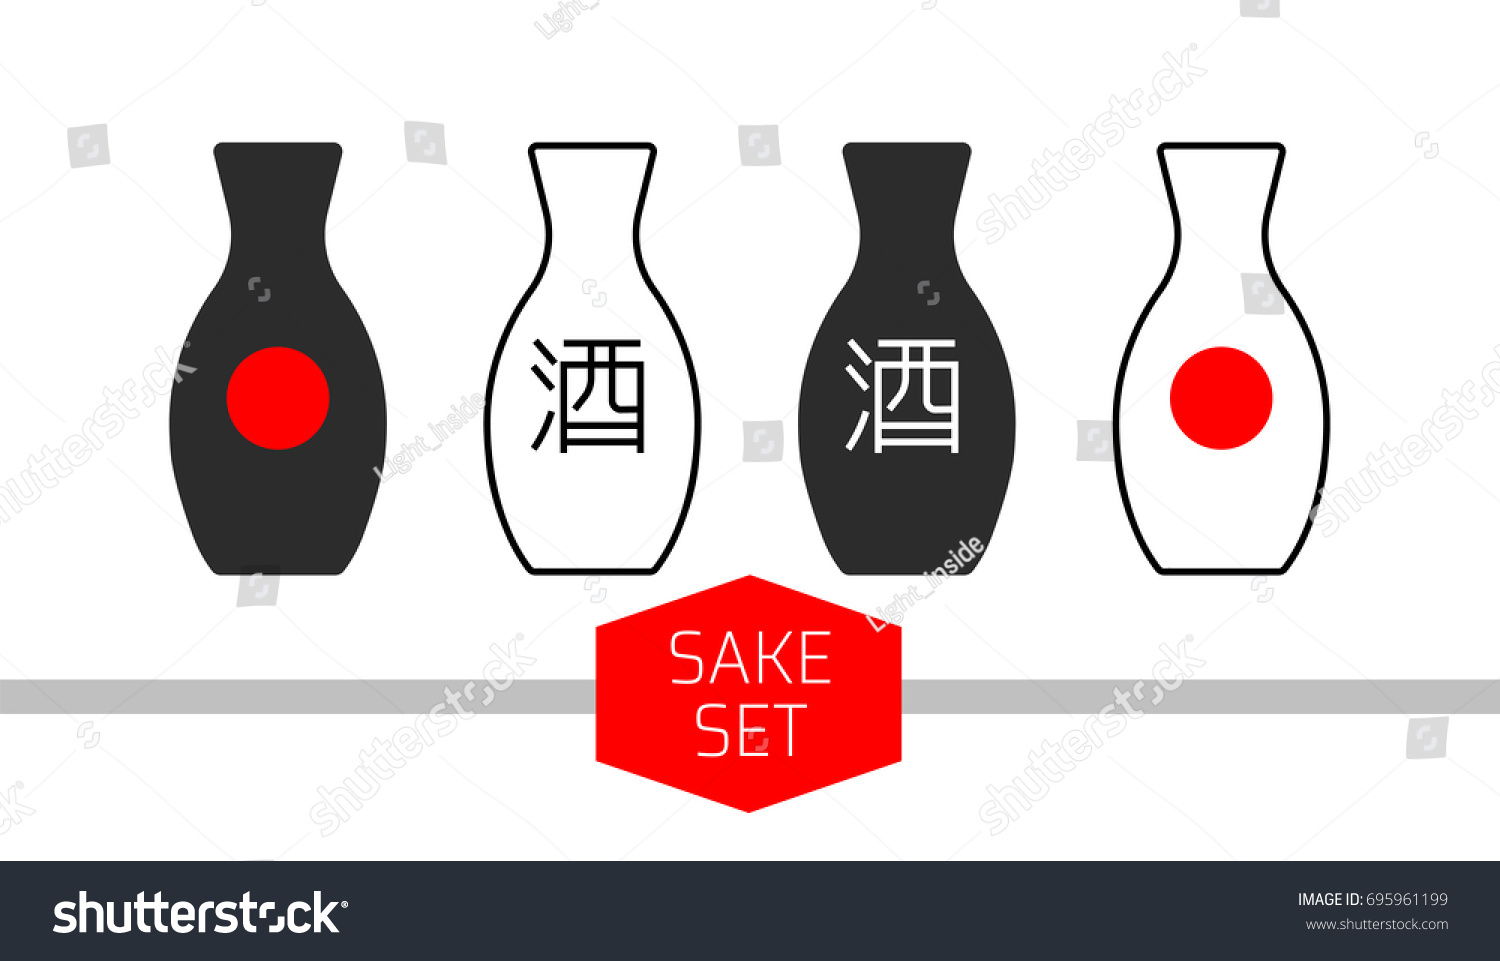 酒瓶のセット 伝統的な日本酒のデザインが違う アルコール飲料のミニマリズム的で平らなアイコン 日本国旗を象徴する絵文字と赤い丸 のベクター画像素材 ロイヤリティフリー